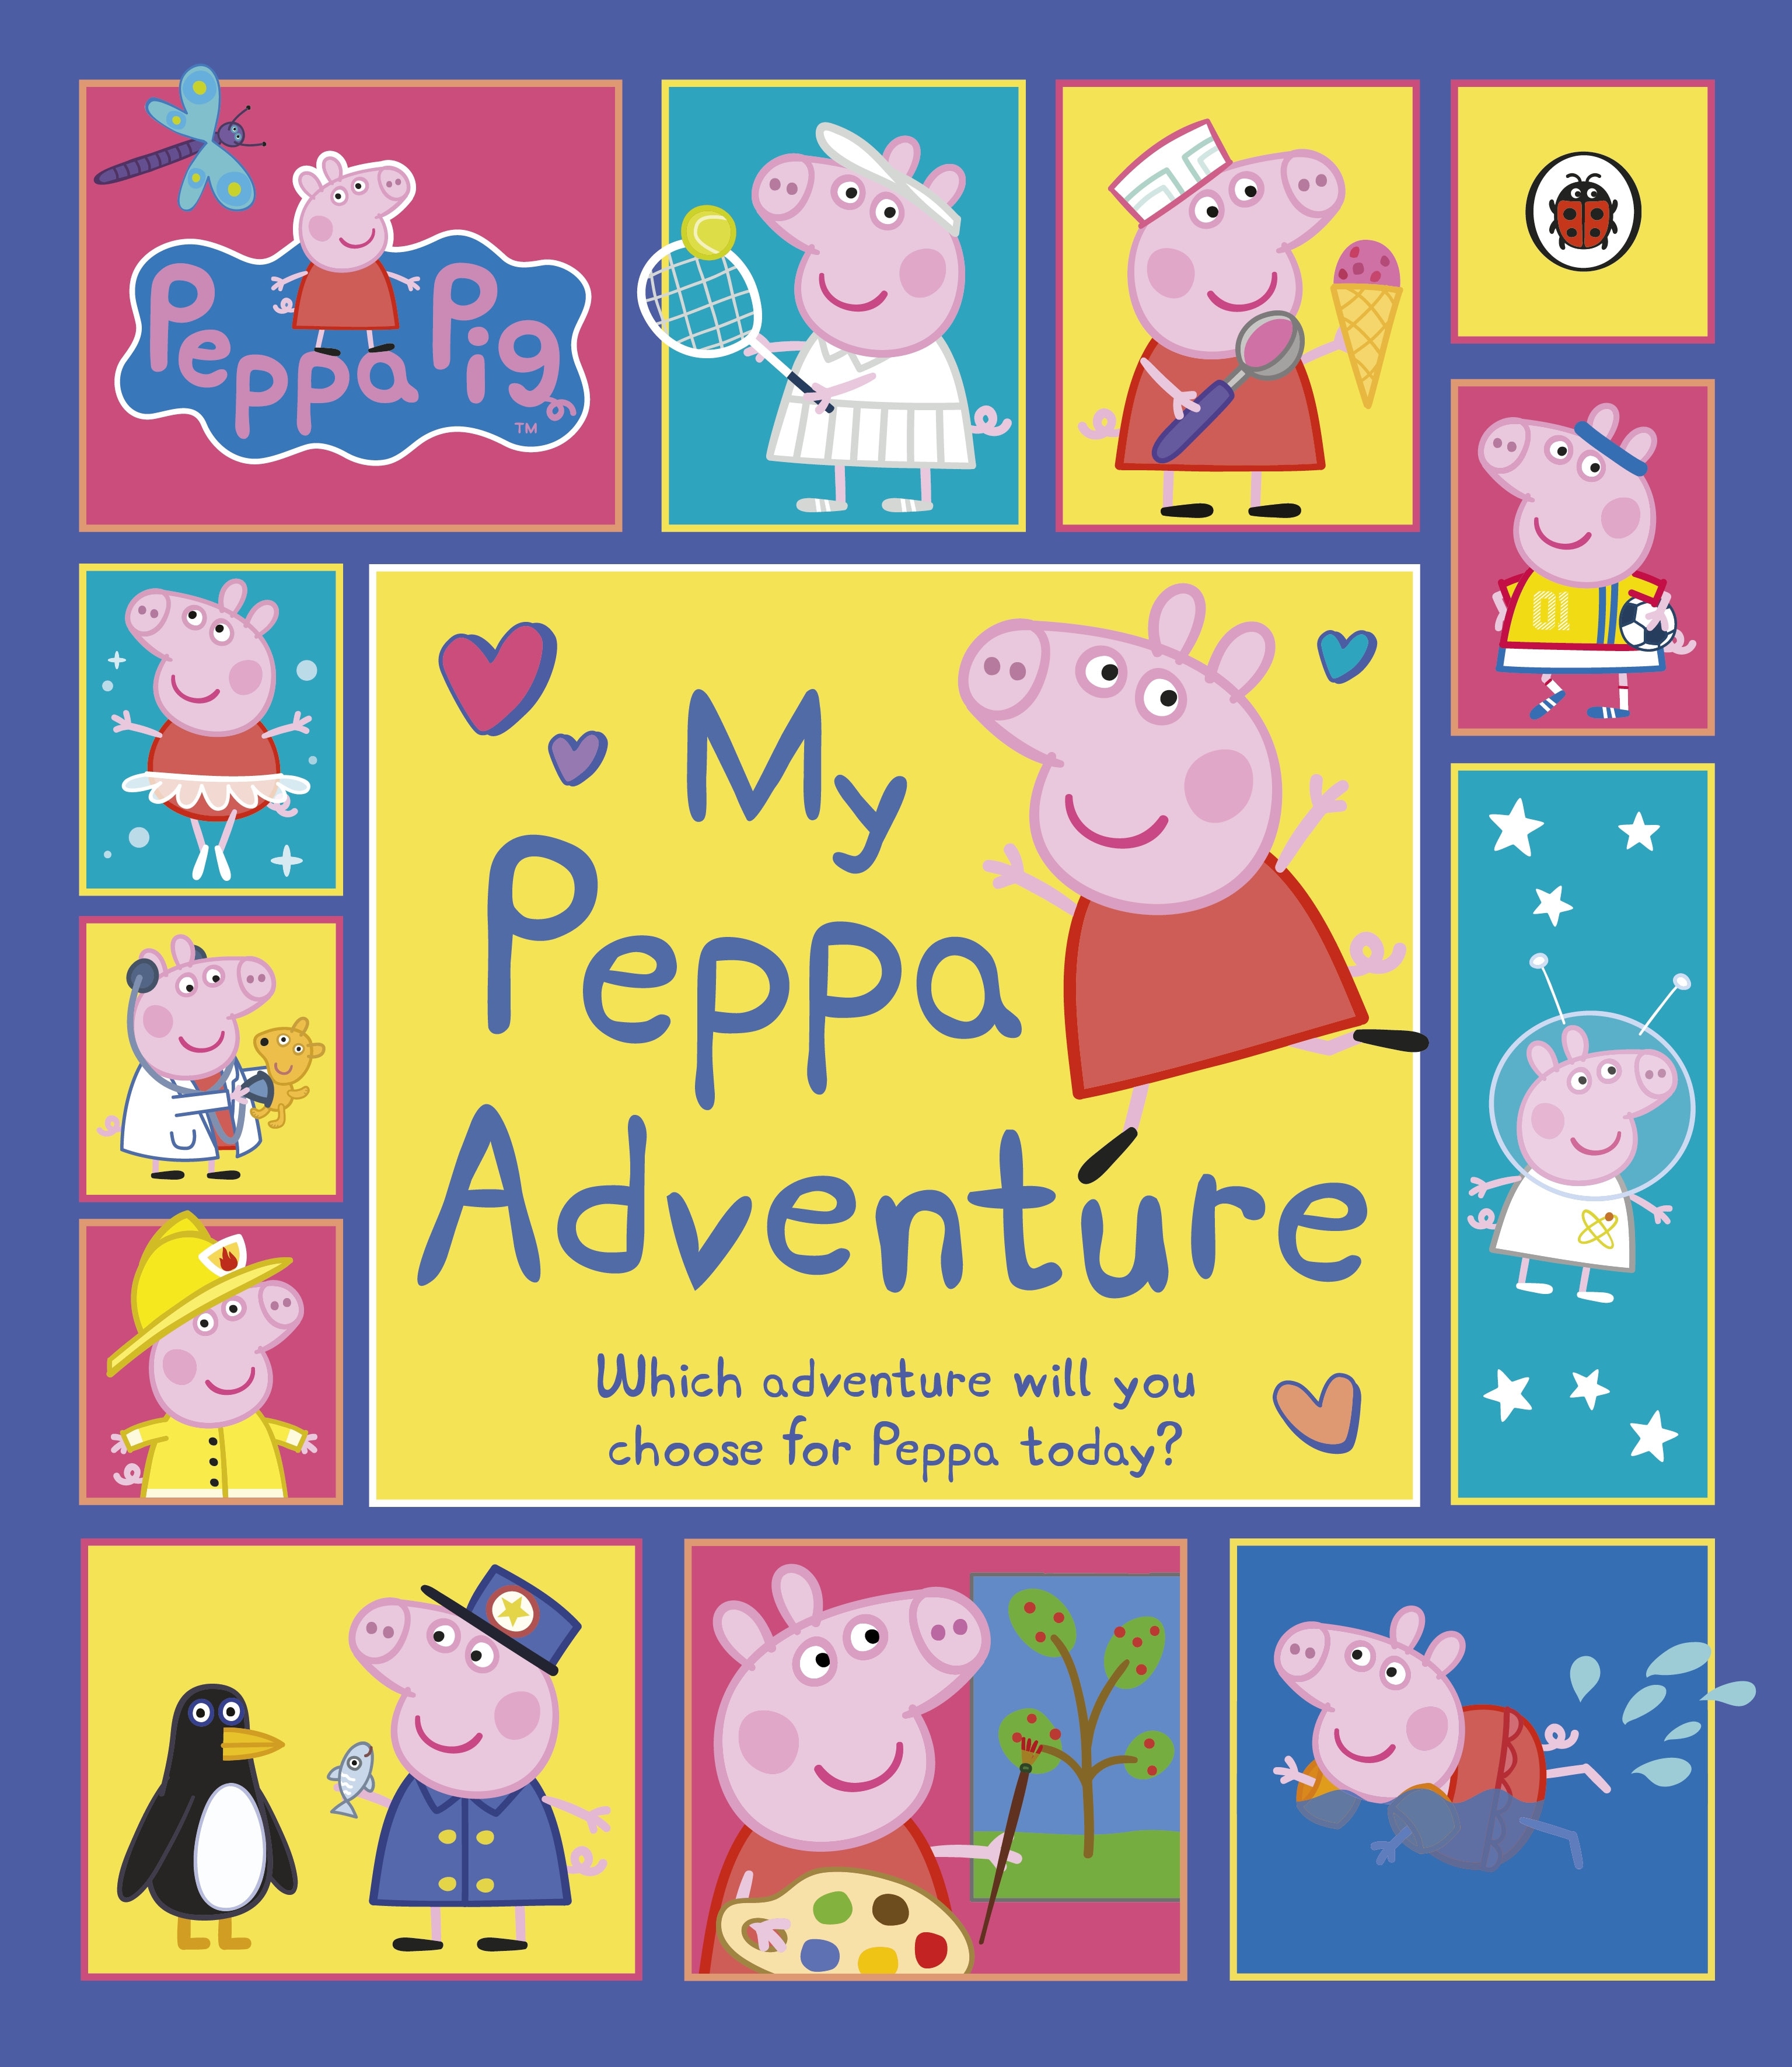 Book “Peppa Pig: My Peppa Adventure” by Peppa Pig — February 17, 2022